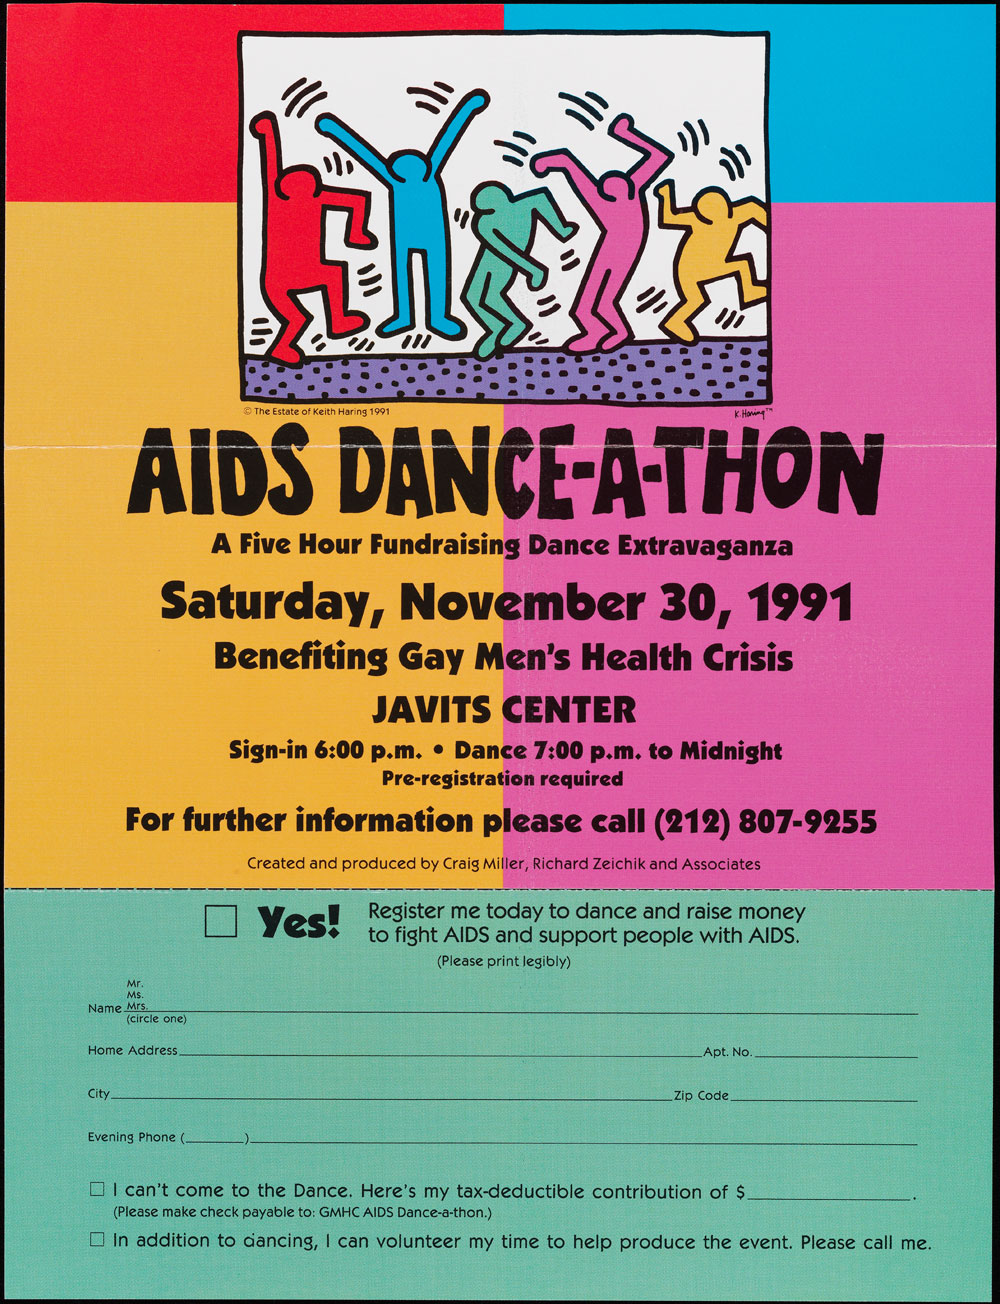 Flyer annonçant un «AIDS Dance-A-thon» en novembre 1991. L'affiche est de couleur vive et comprend un formulaire d'inscription